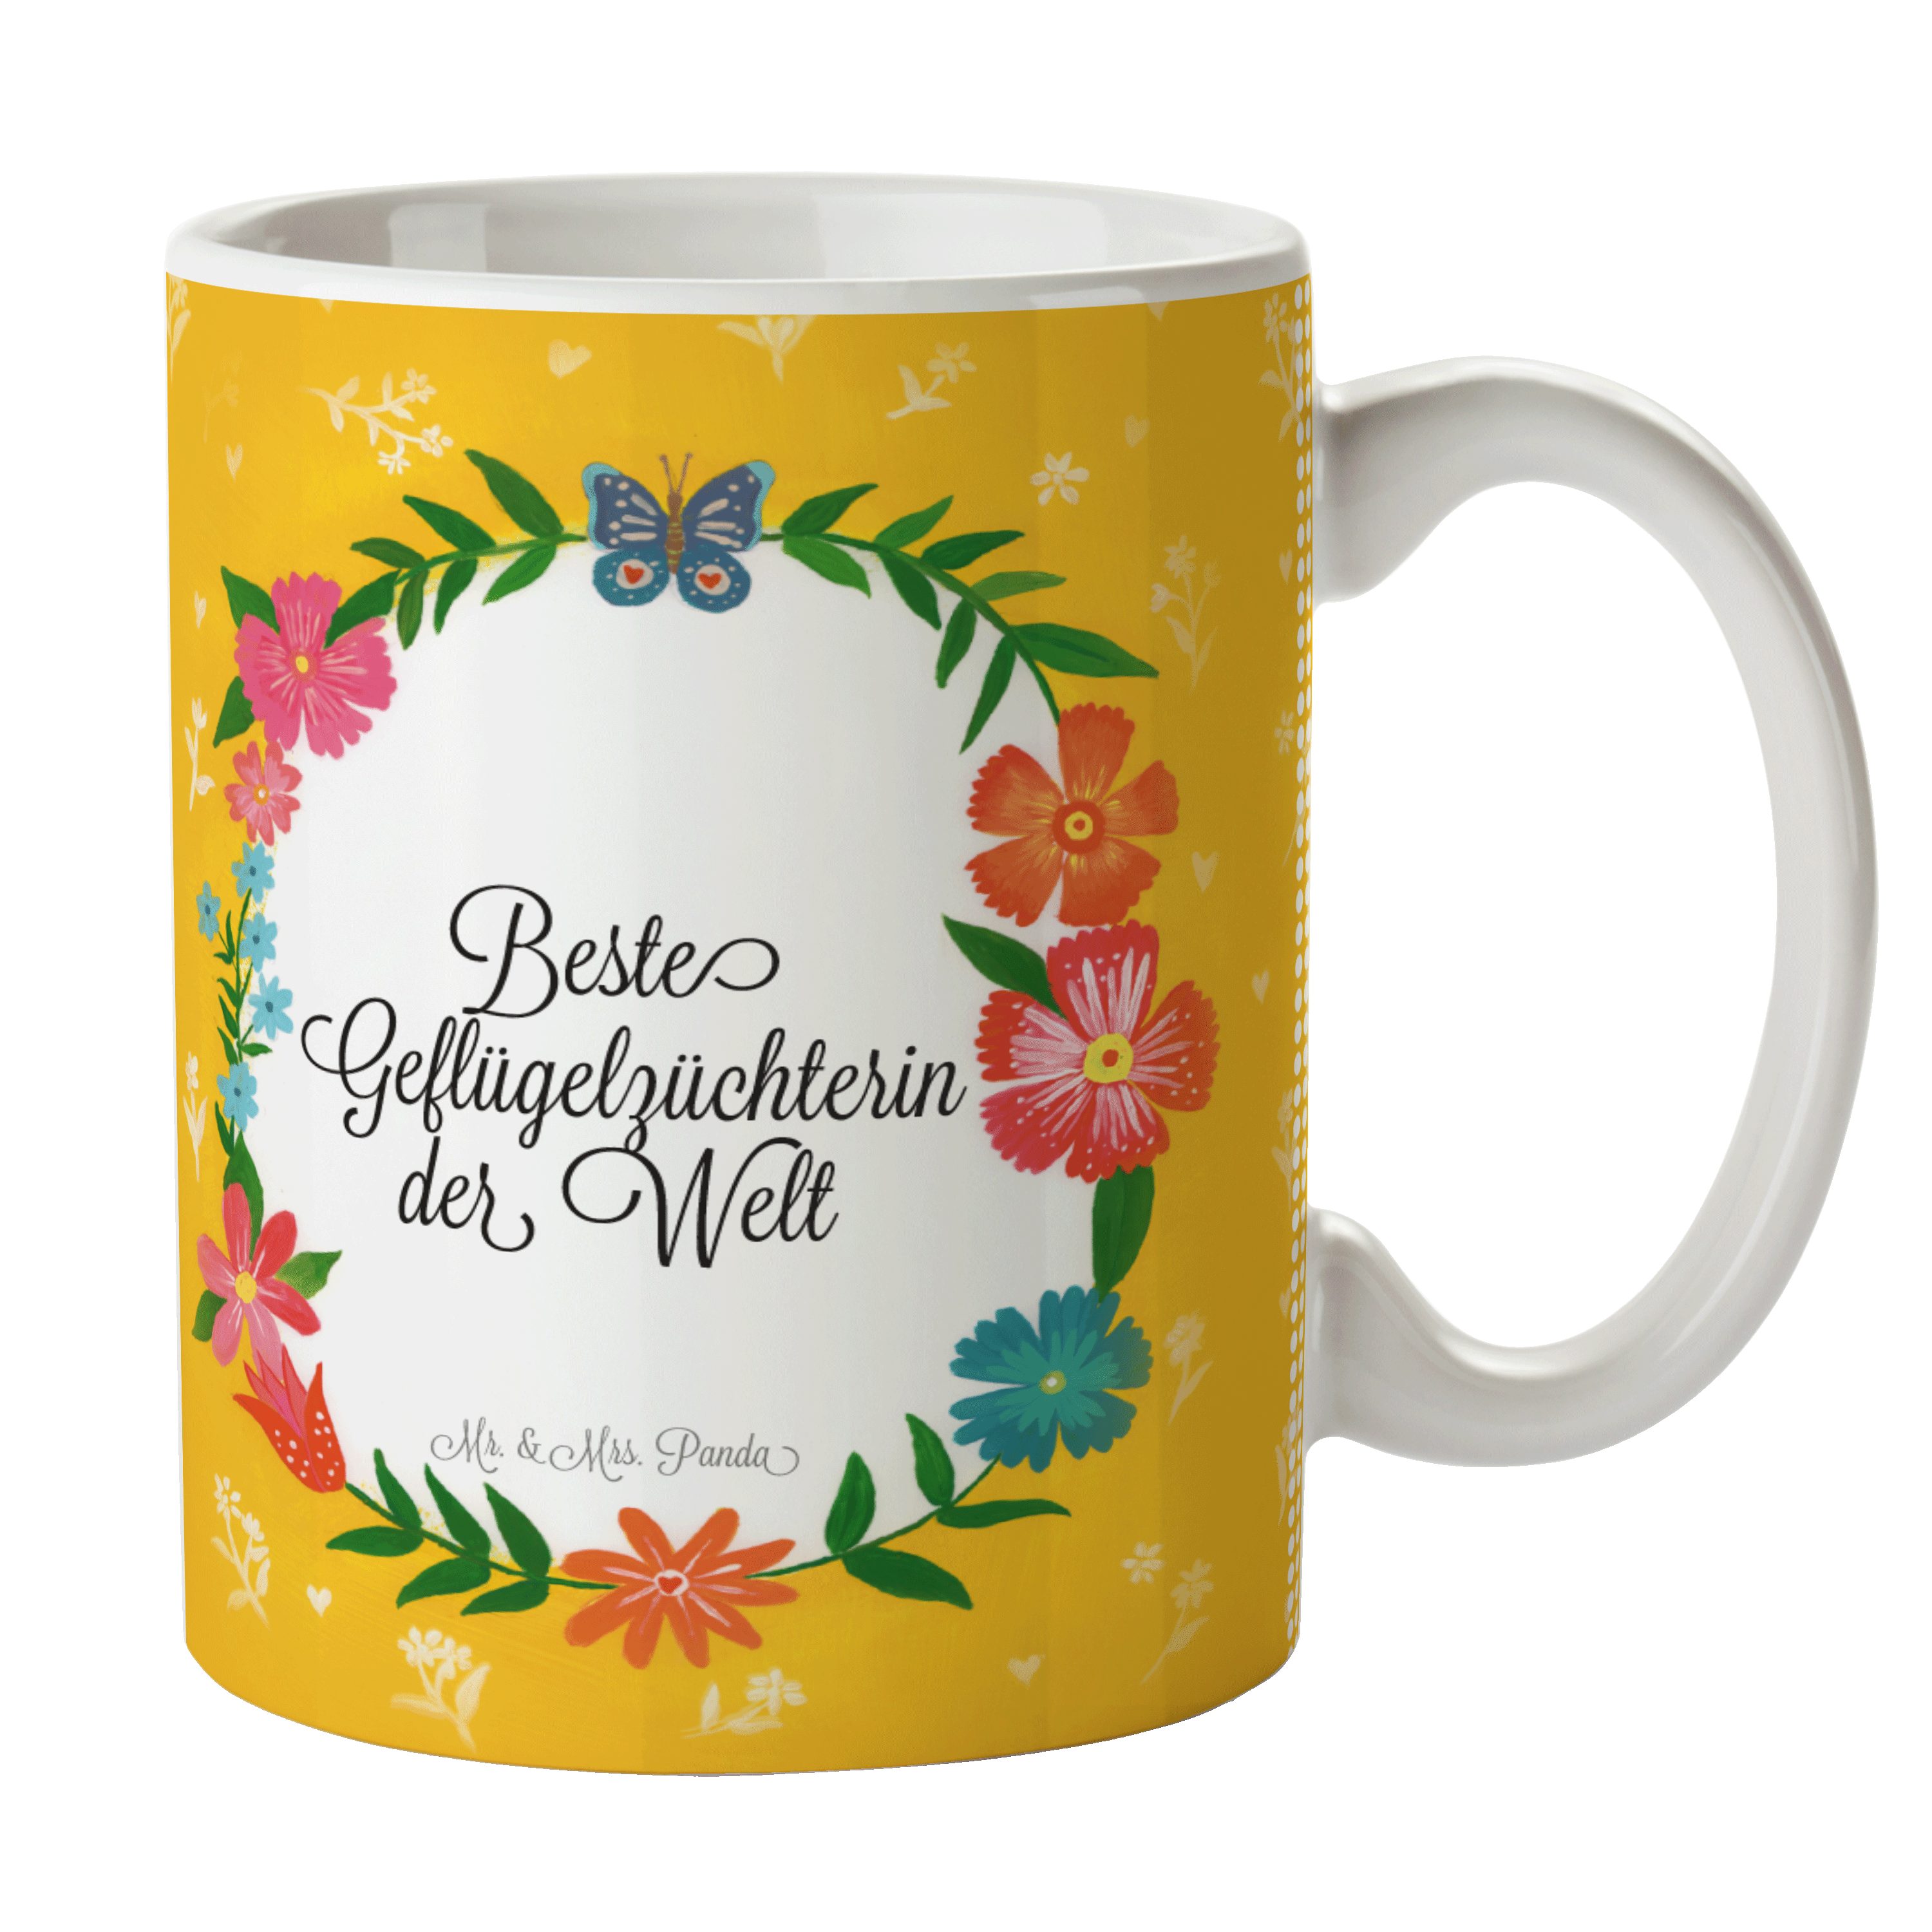 & Kaffee, Mr. Geschenk, Rente, - Schenken, Geflügelzüchterin Mrs. Geschenk Keramik Tasse Tasse, Panda